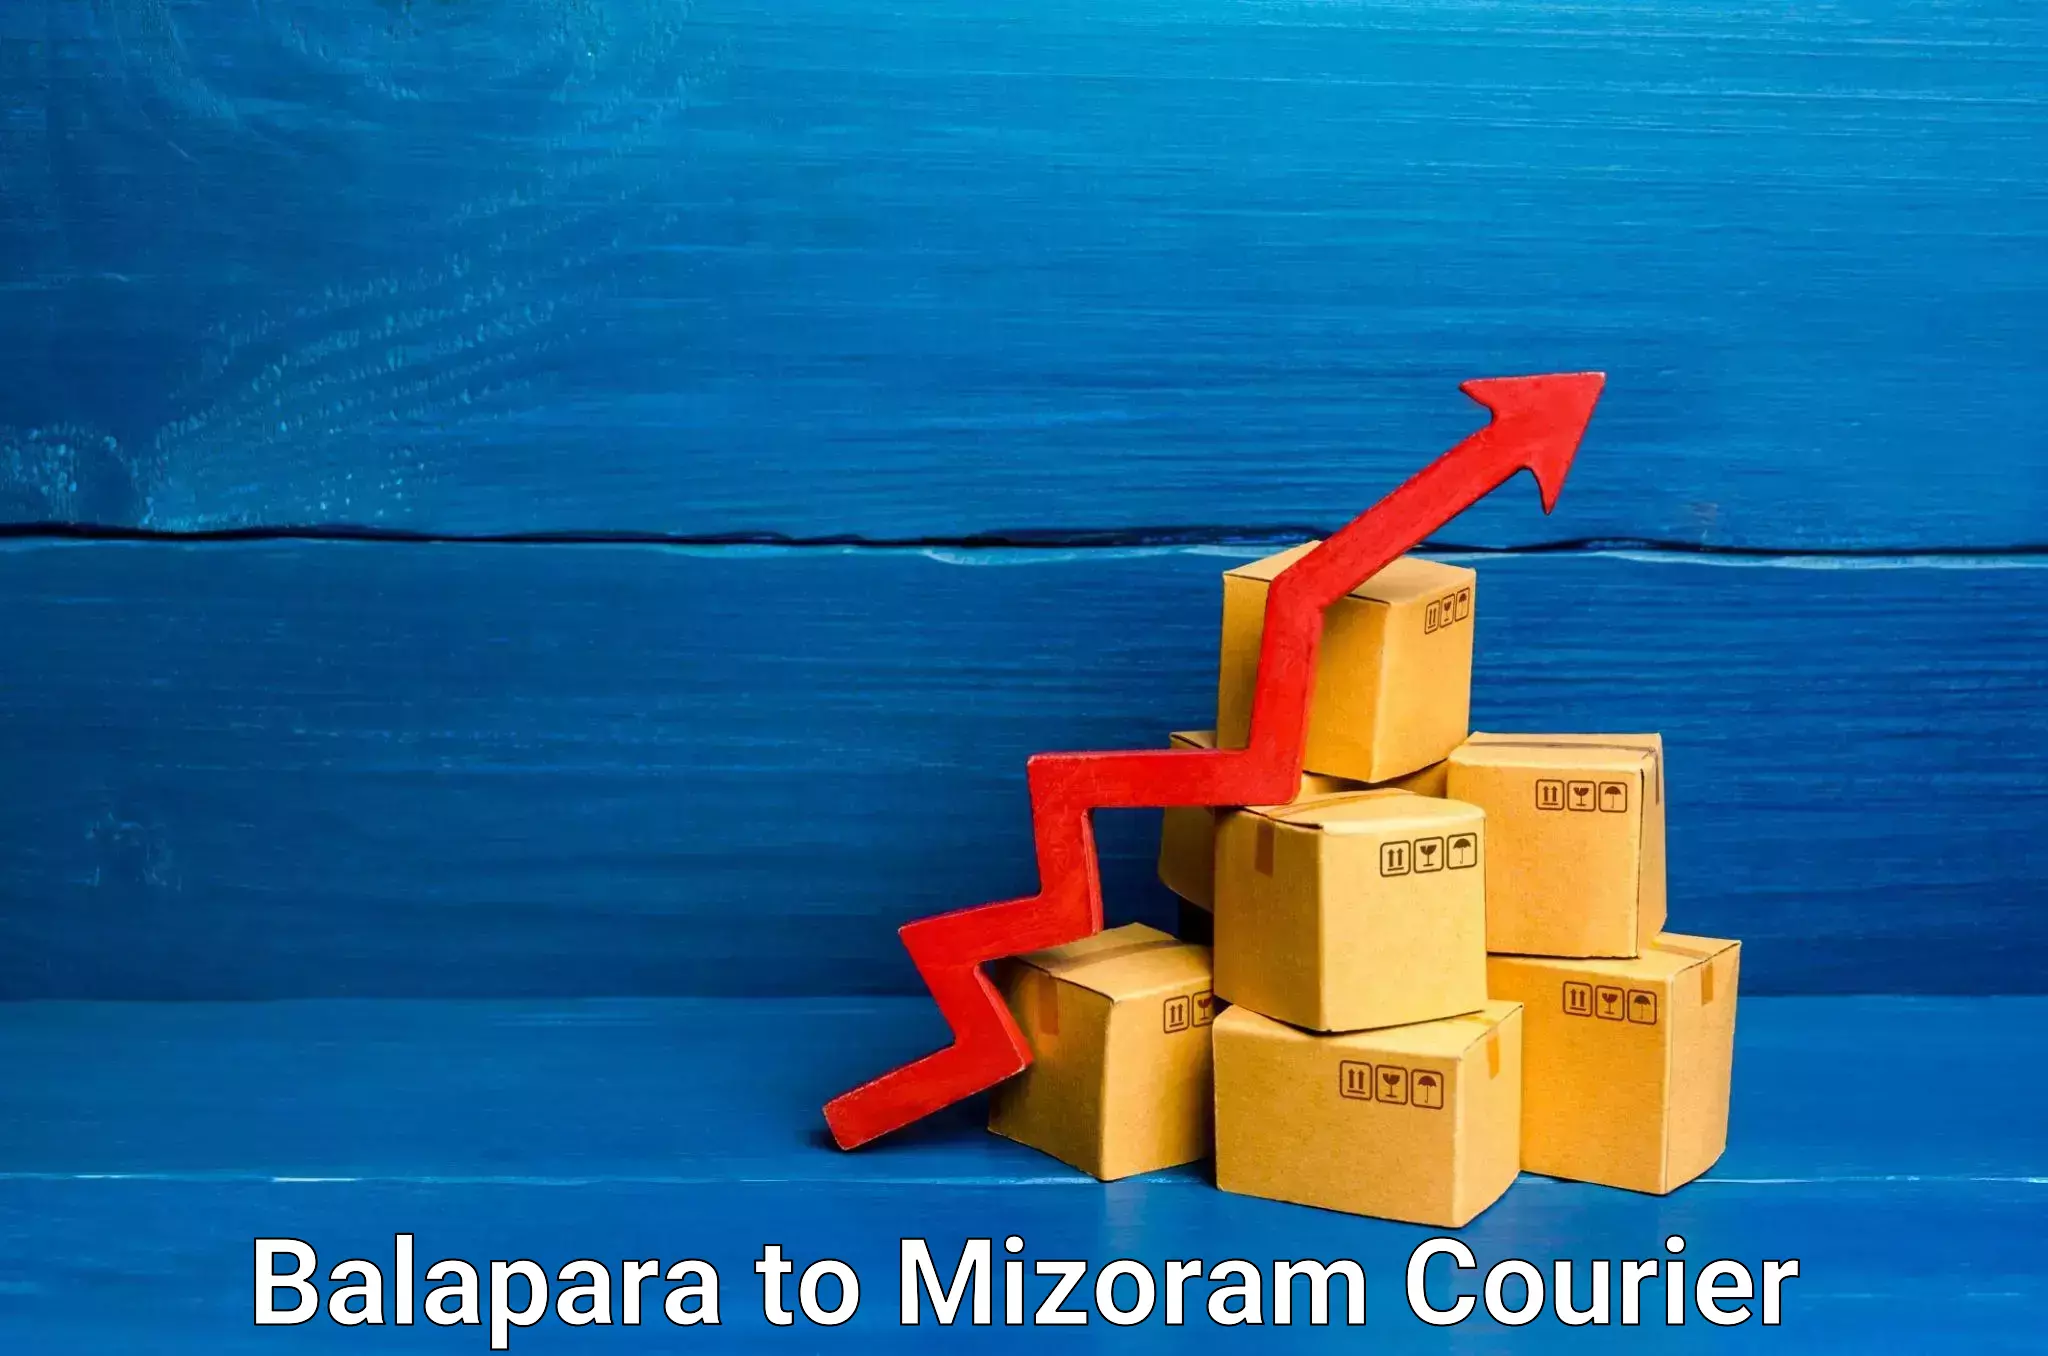 Express logistics service Balapara to Mizoram